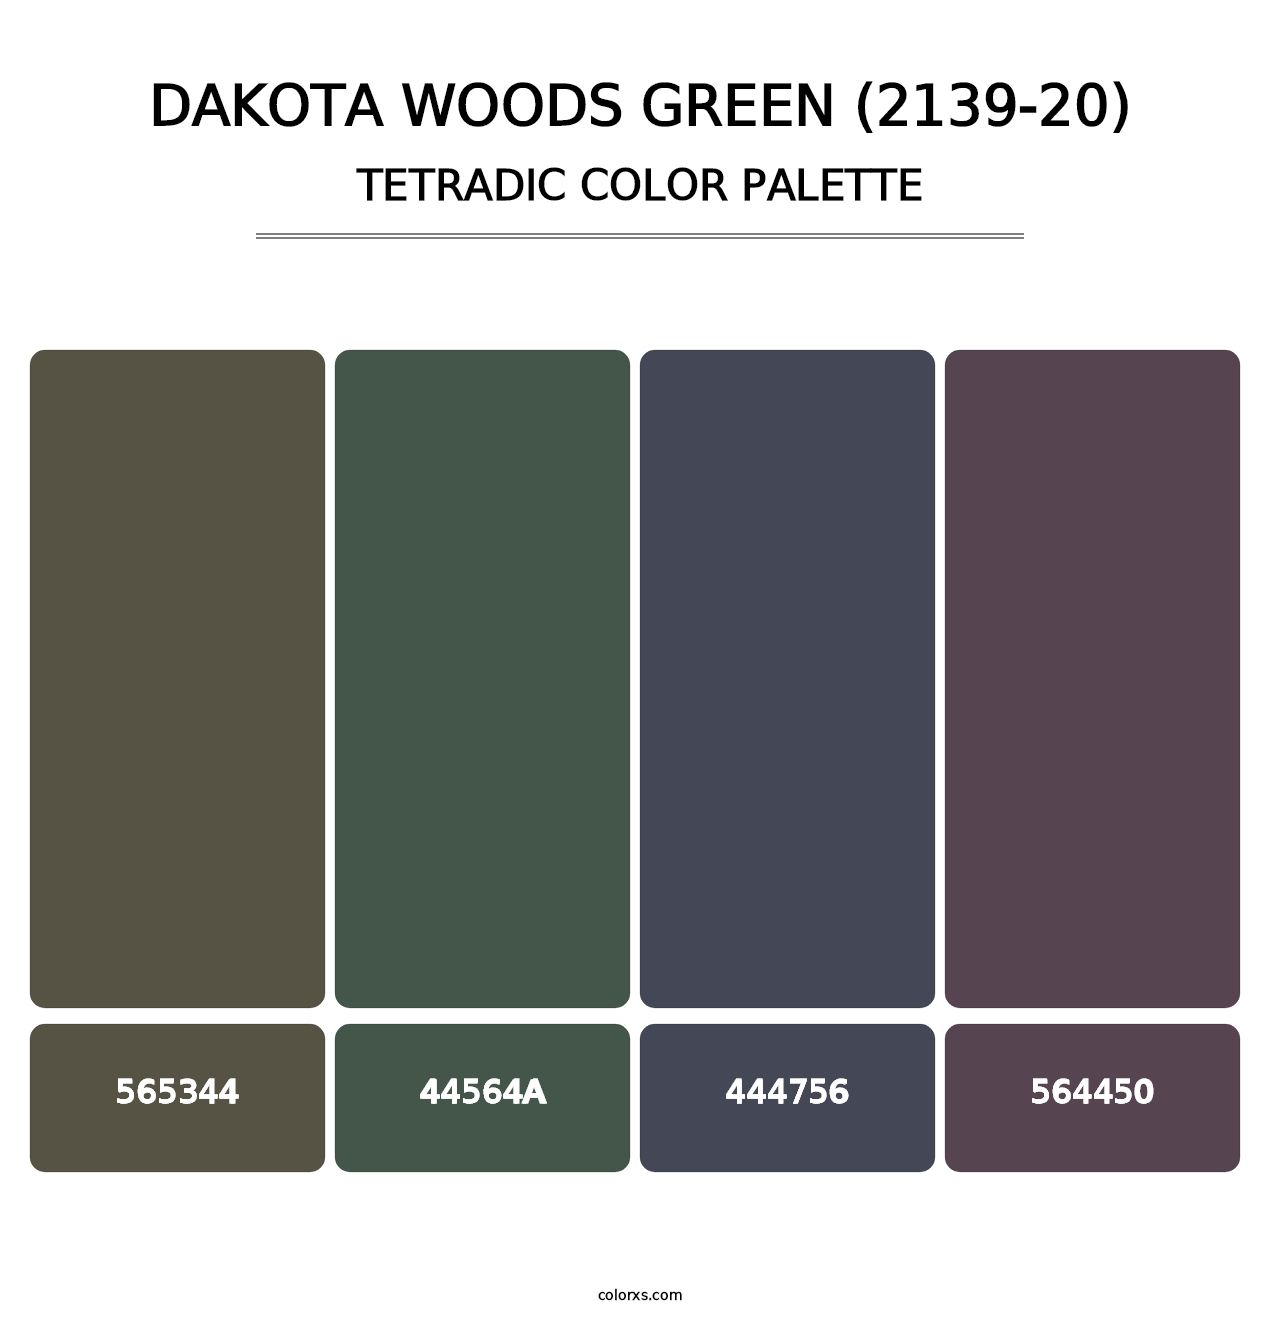 Dakota Woods Green (2139-20) - Tetradic Color Palette